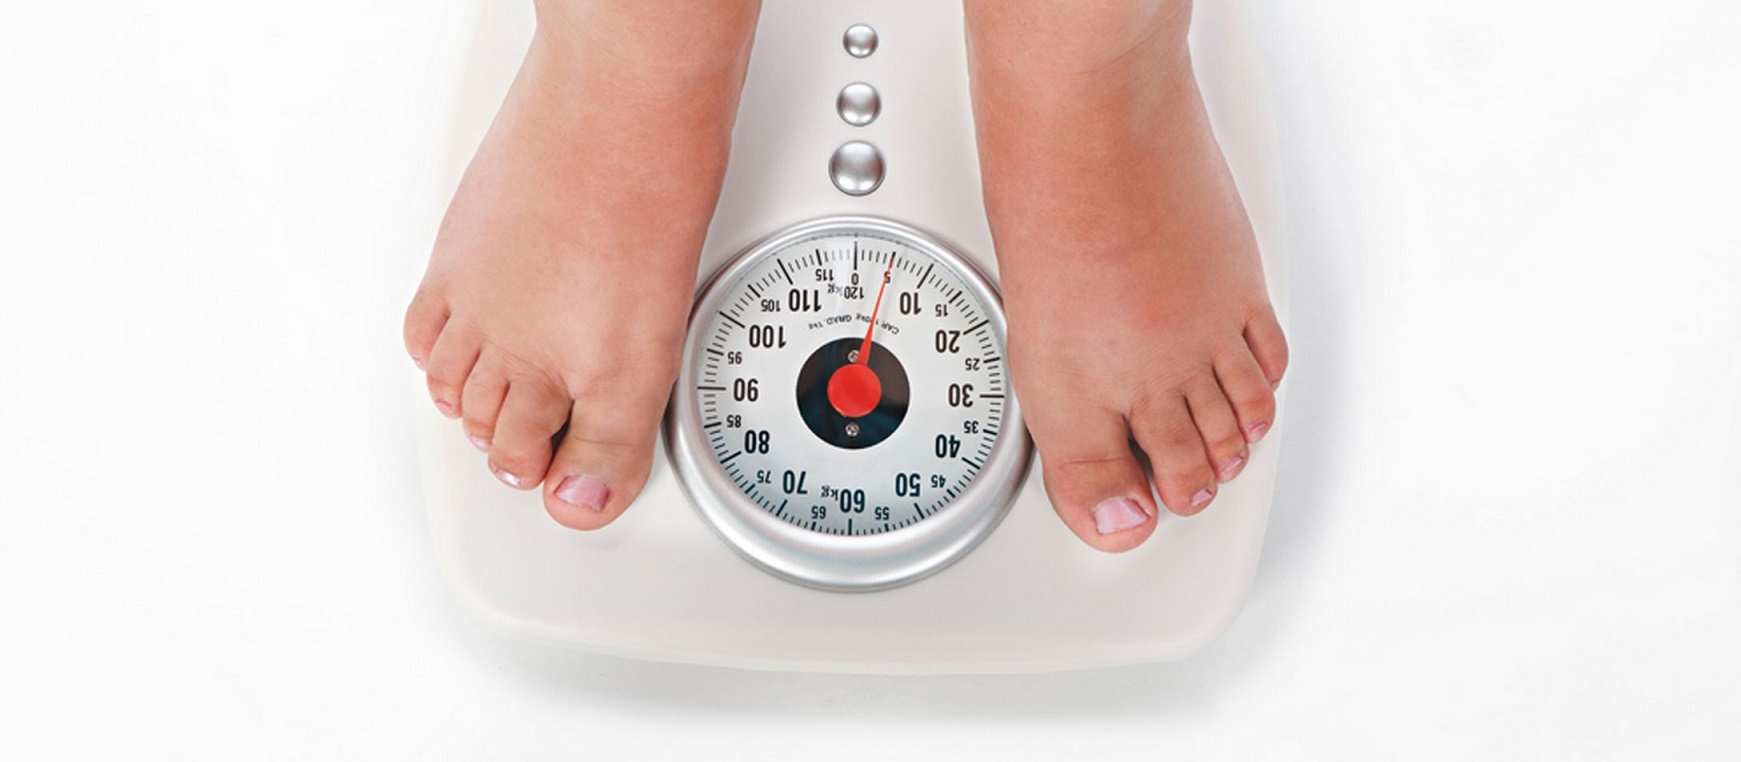 Диабет Как Сбросить Вес